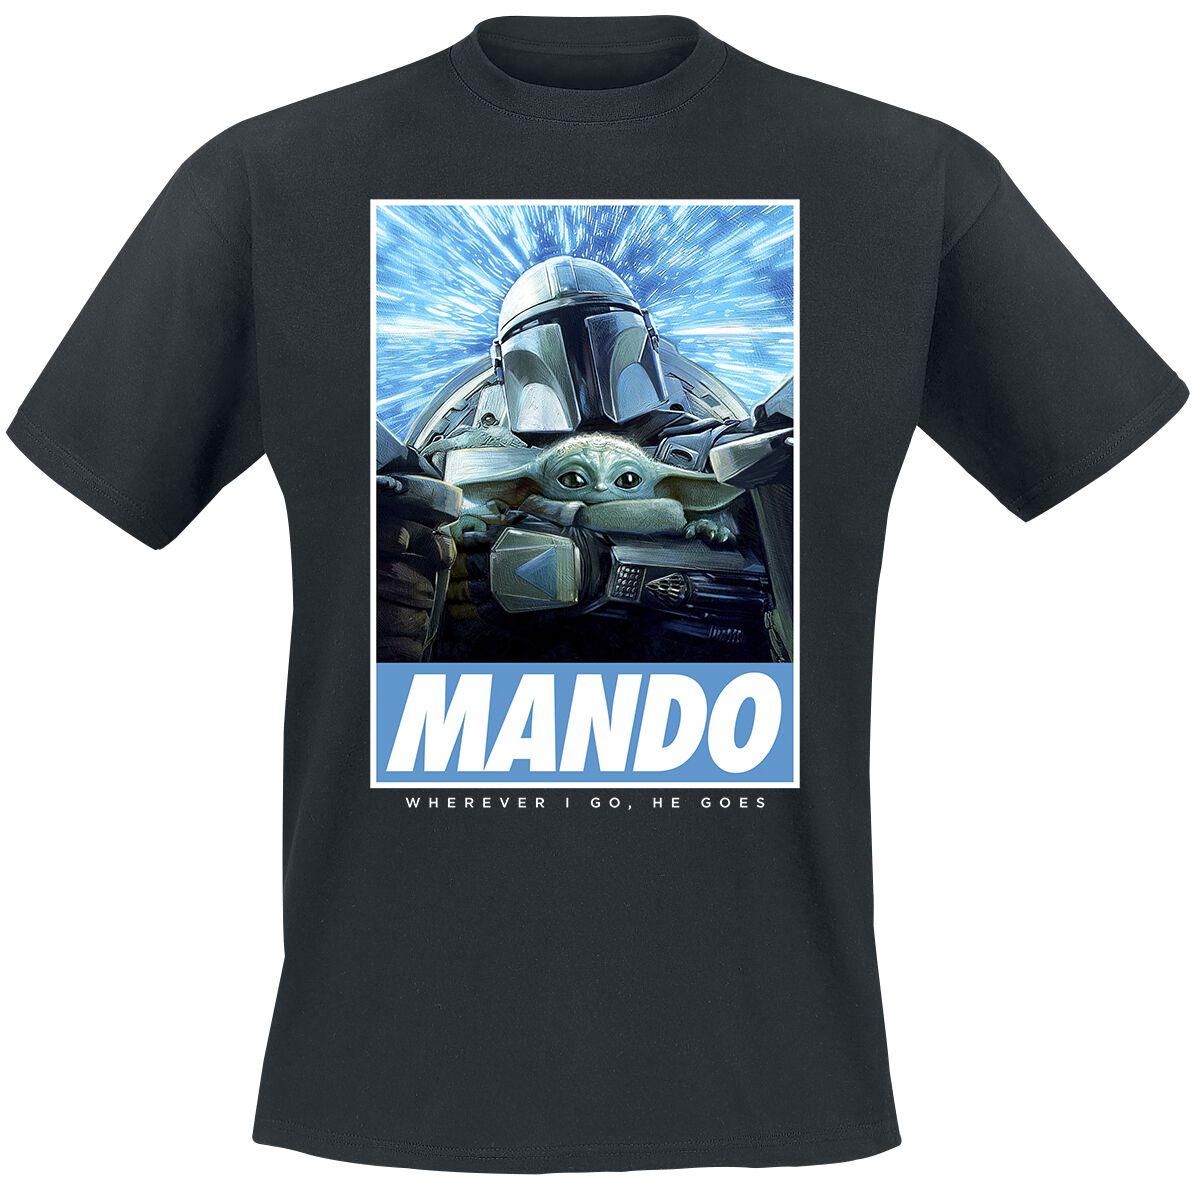 Star Wars T-Shirt - The Mandalorian - Season 3 - Wherever I Go - S bis 4XL - für Männer - Größe 3XL - schwarz  - Lizenzierter Fanartikel